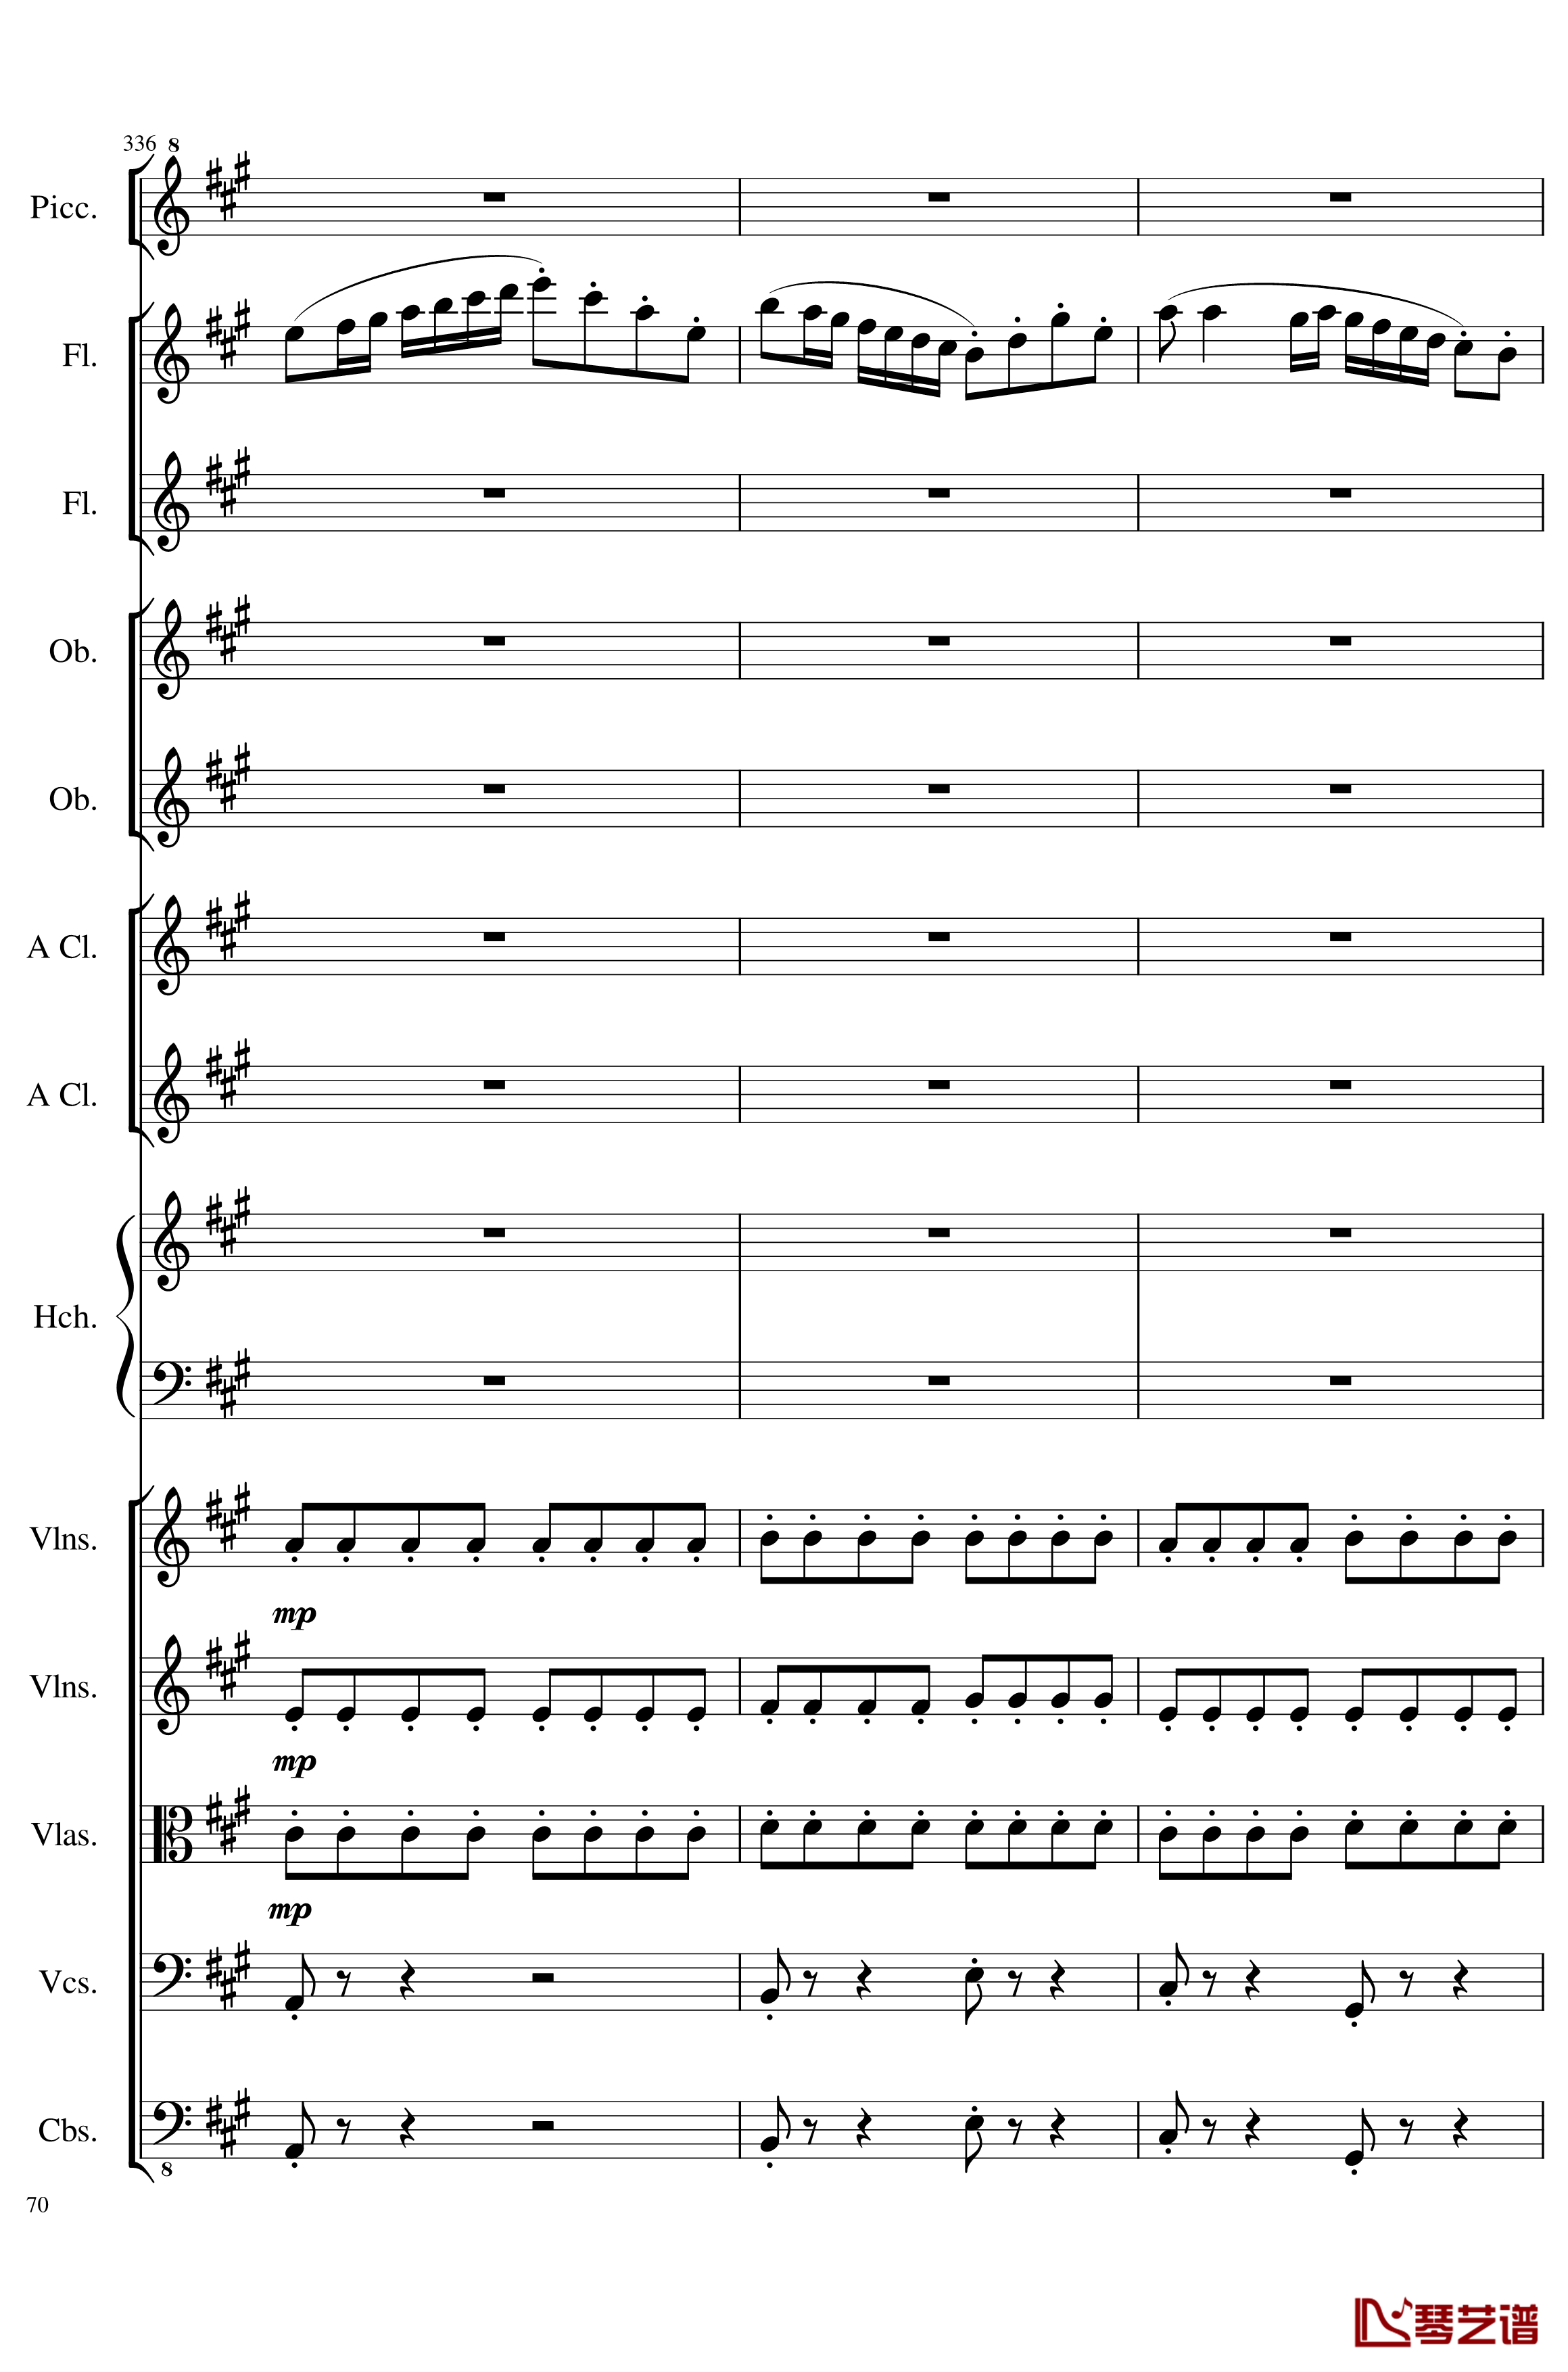 7 Contredanses No.1-7, Op.124钢琴谱-7首乡村舞曲，第一至第七，作品124-一个球70